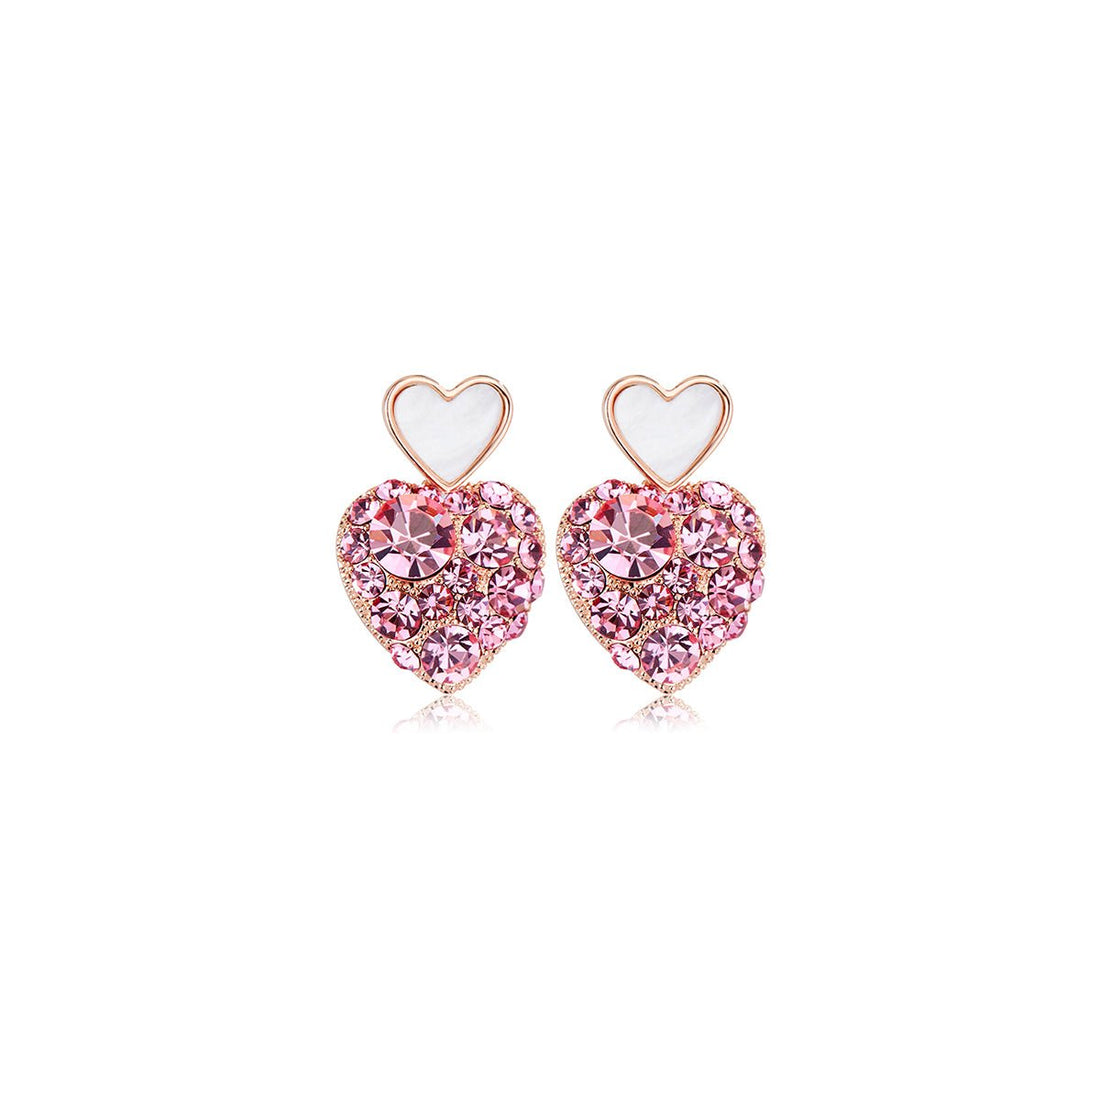 Sweetie Heart White Earrings - 0cm